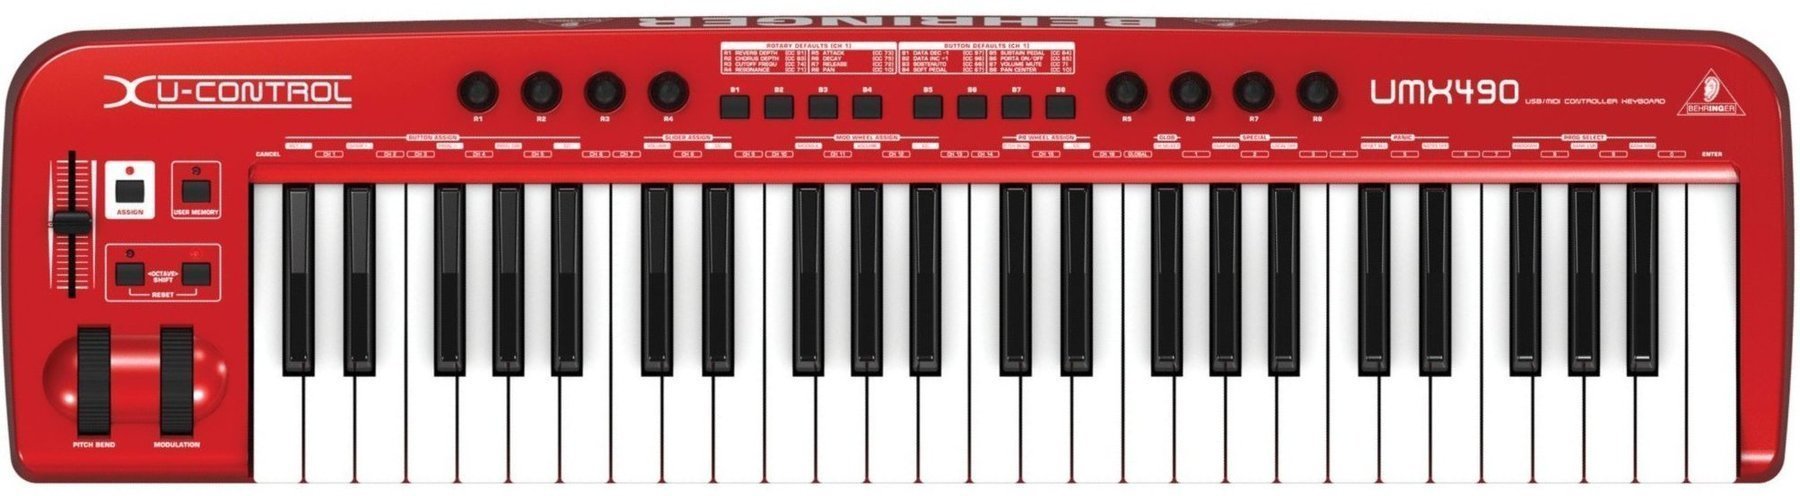 Clavier MIDI Behringer UMX 490 U-CONTROL